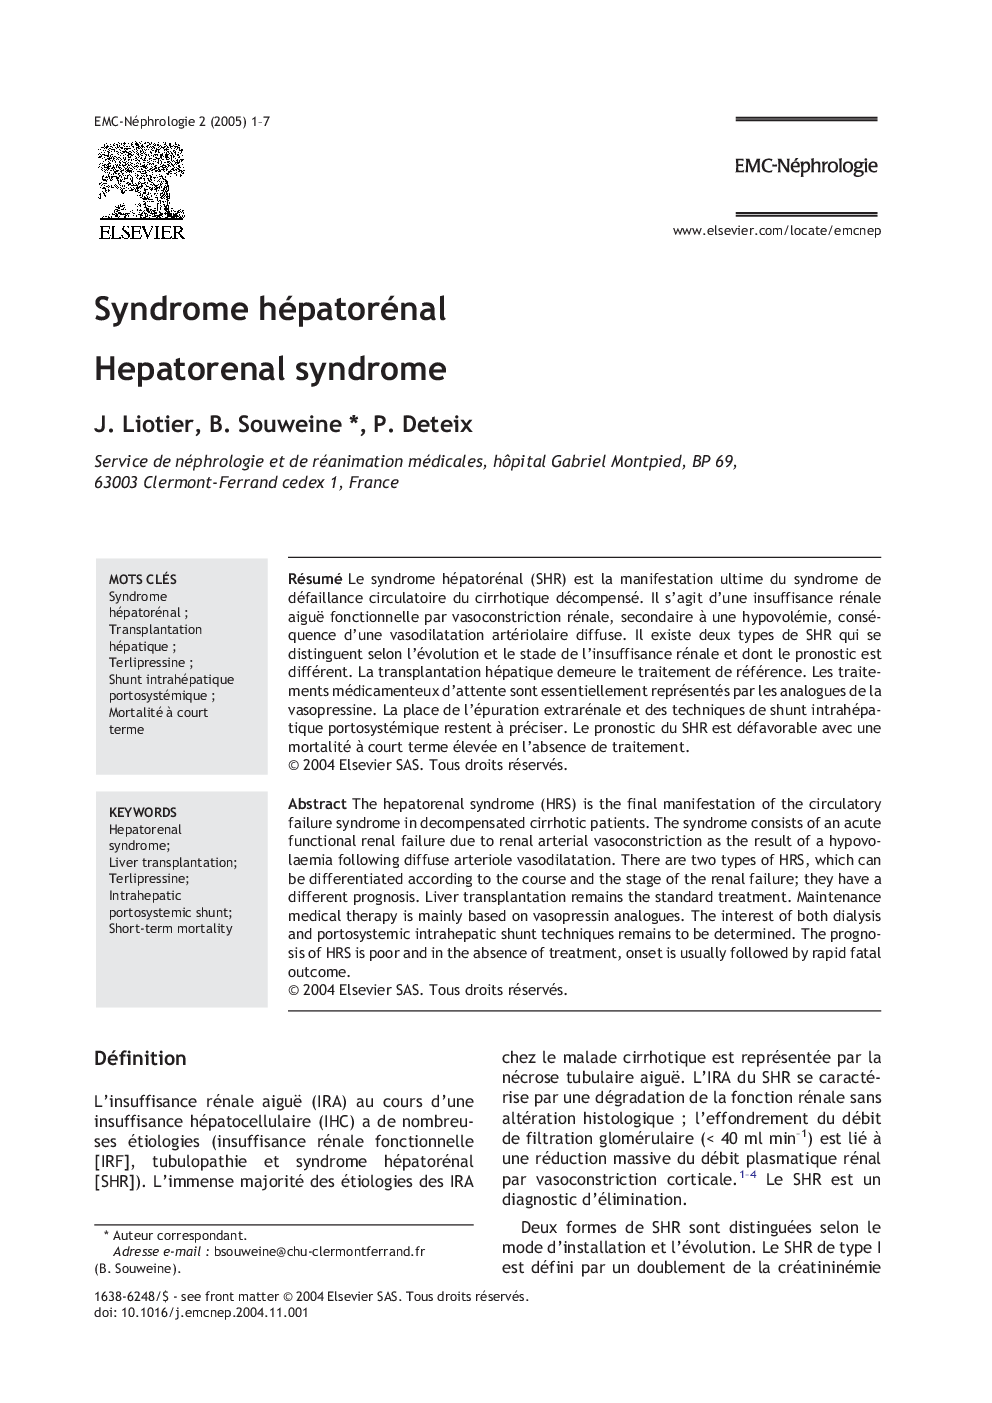 Syndrome hépatorénal